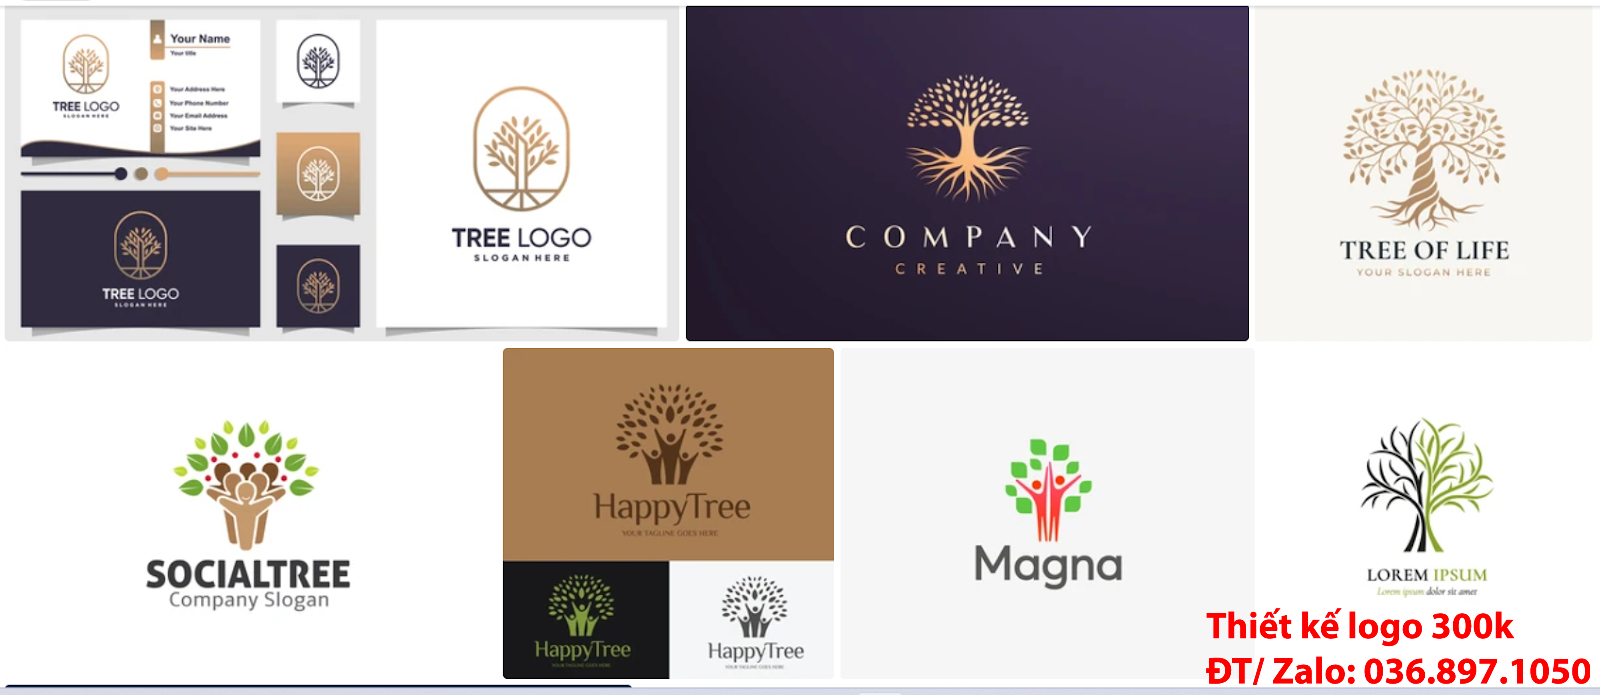 Công ty nhận làm Mẫu logo cây xanh đơn giản tinh tế đẹp chuyên nghiệp tại Tp Hồ Chí Minh